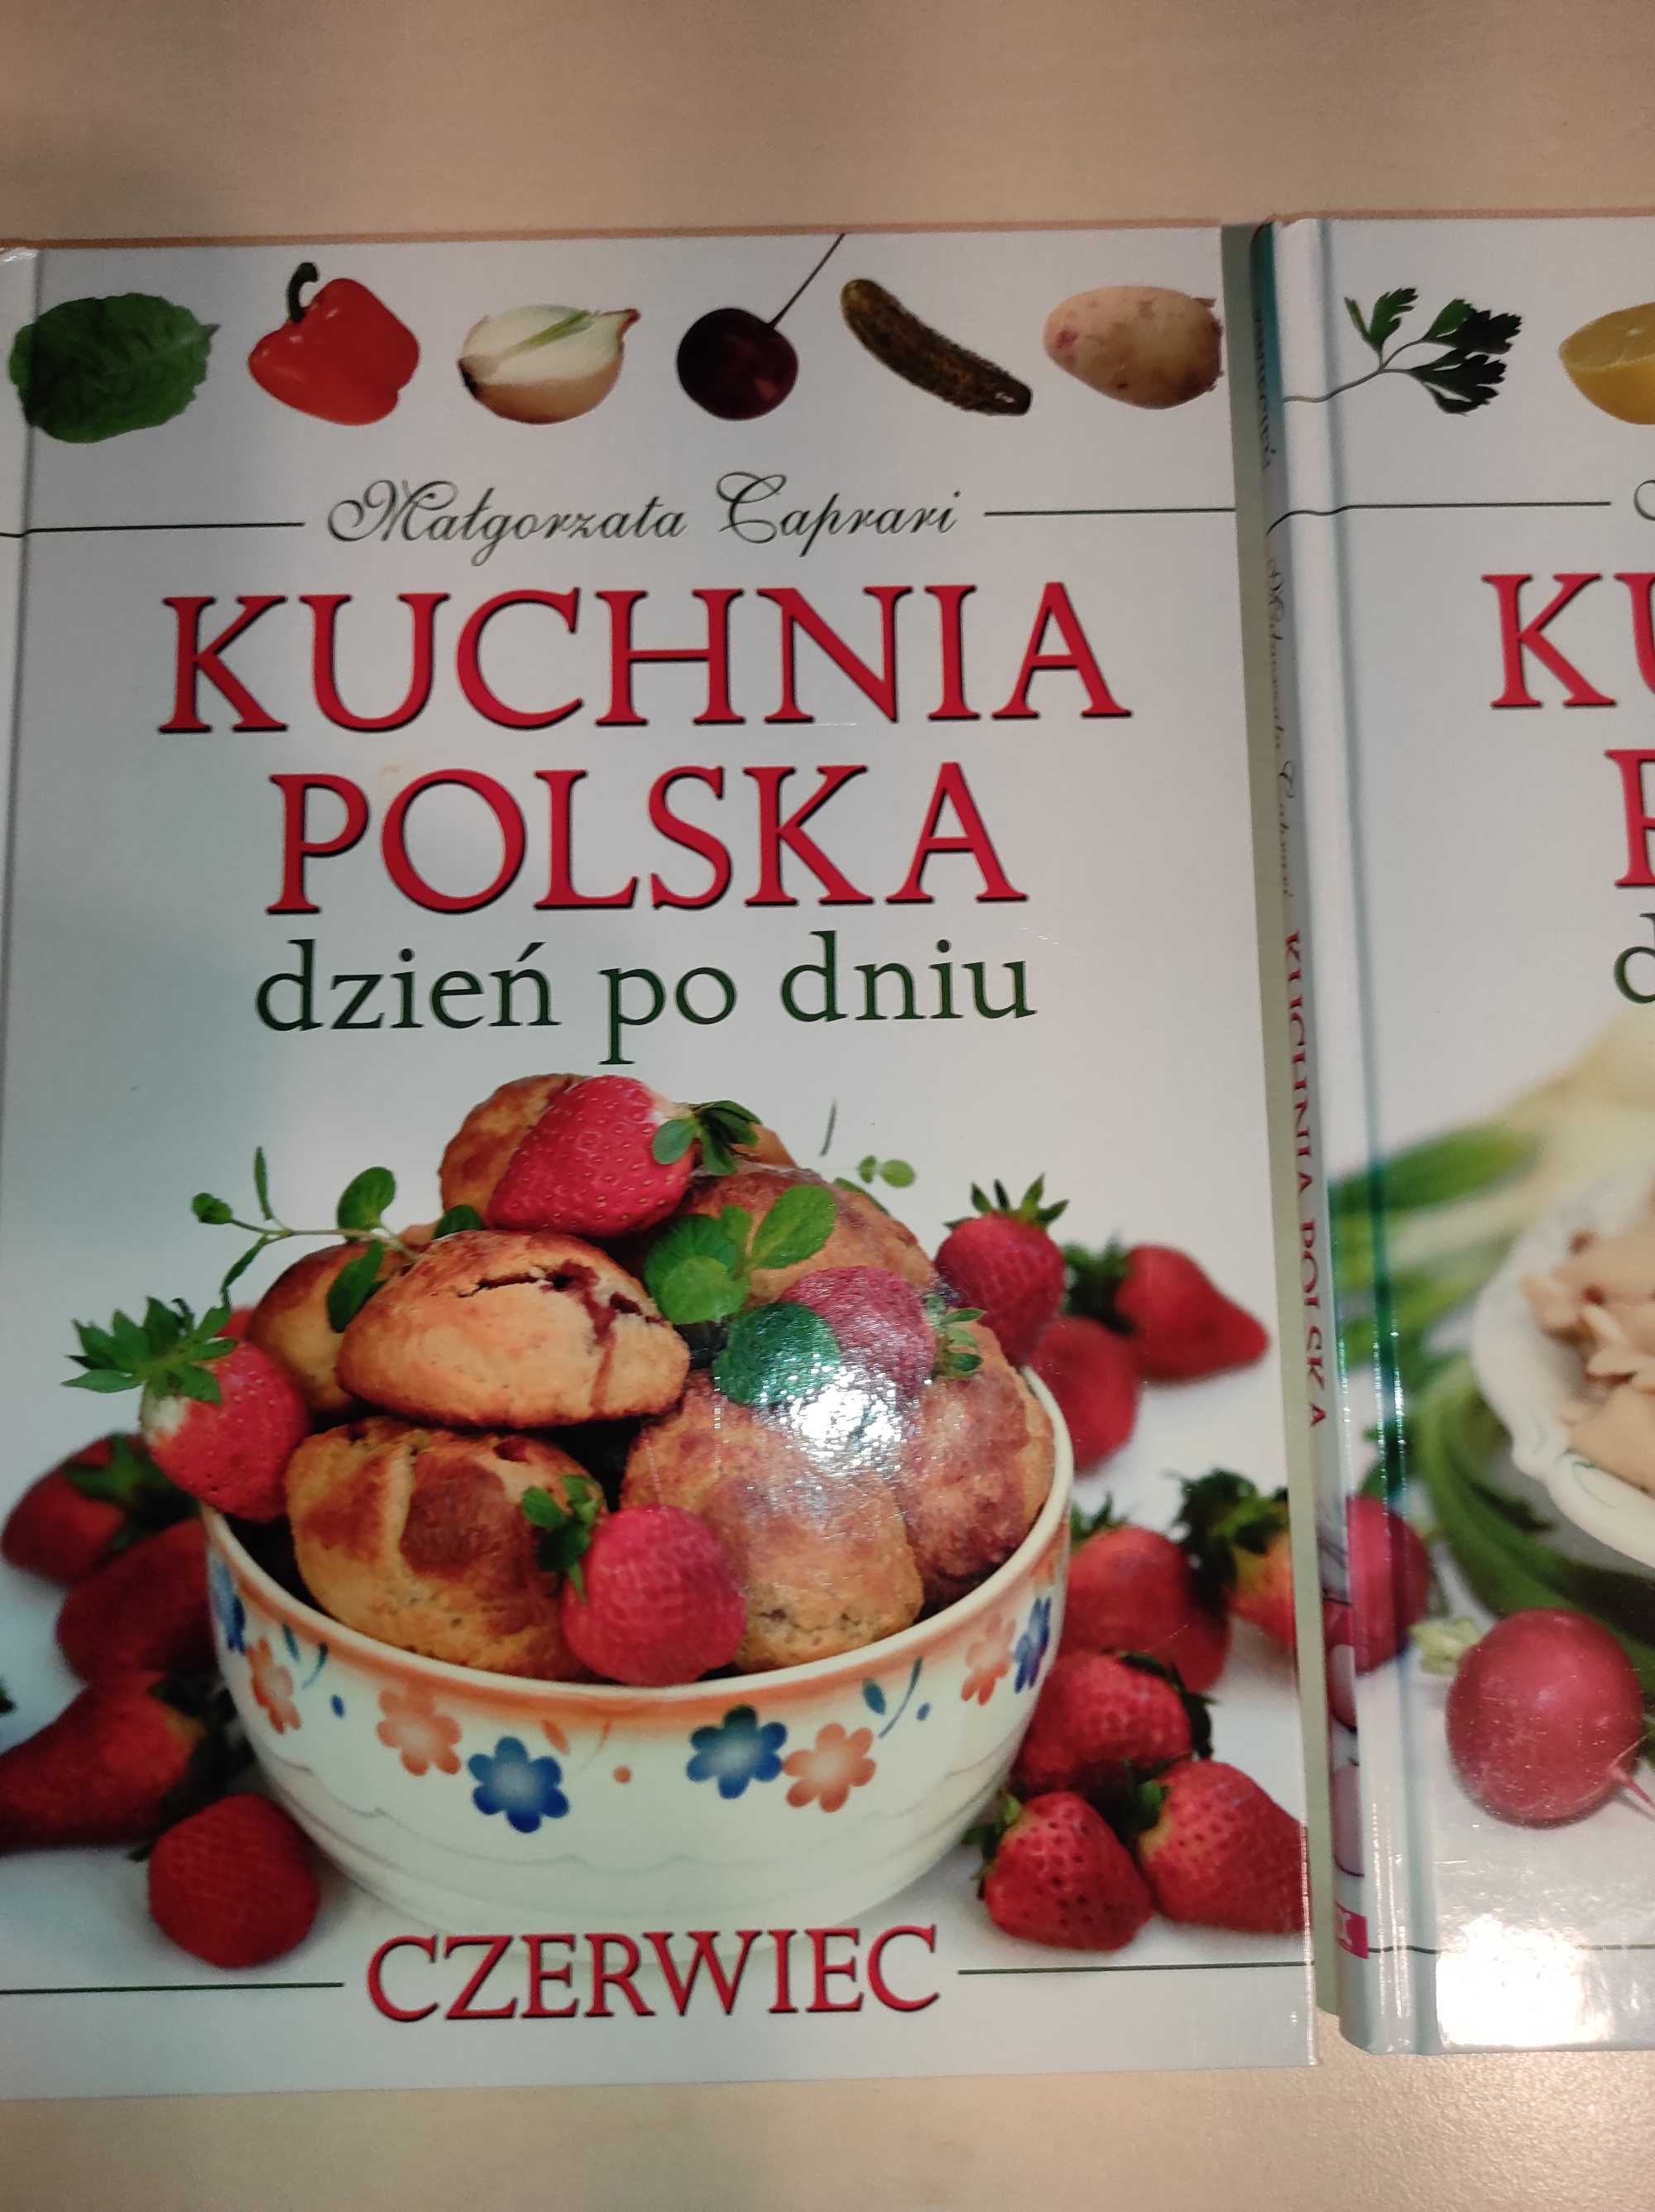 Kuchnia Polska dzień po dniu 3 sztuki